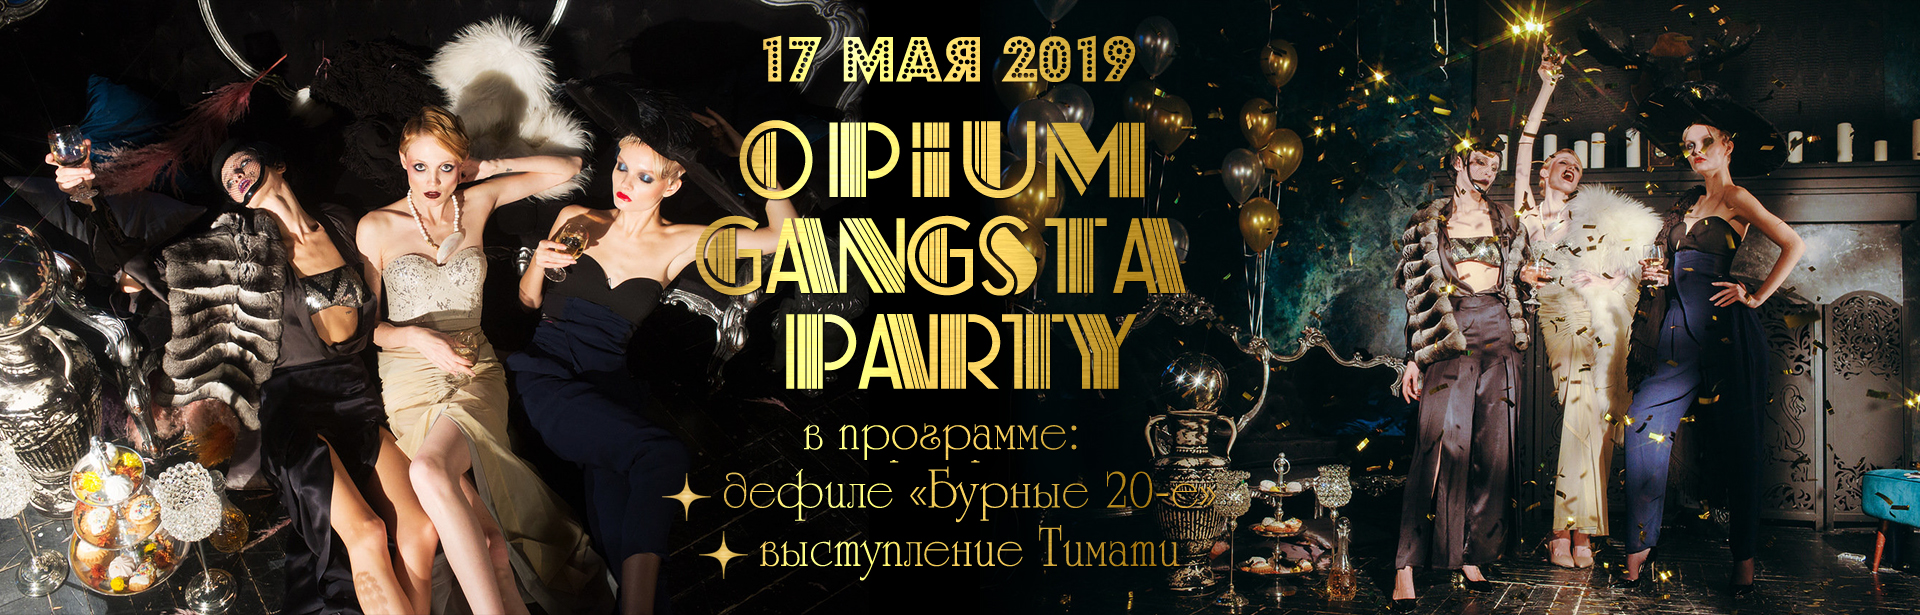 Вечеринка Opium Gangsta Party